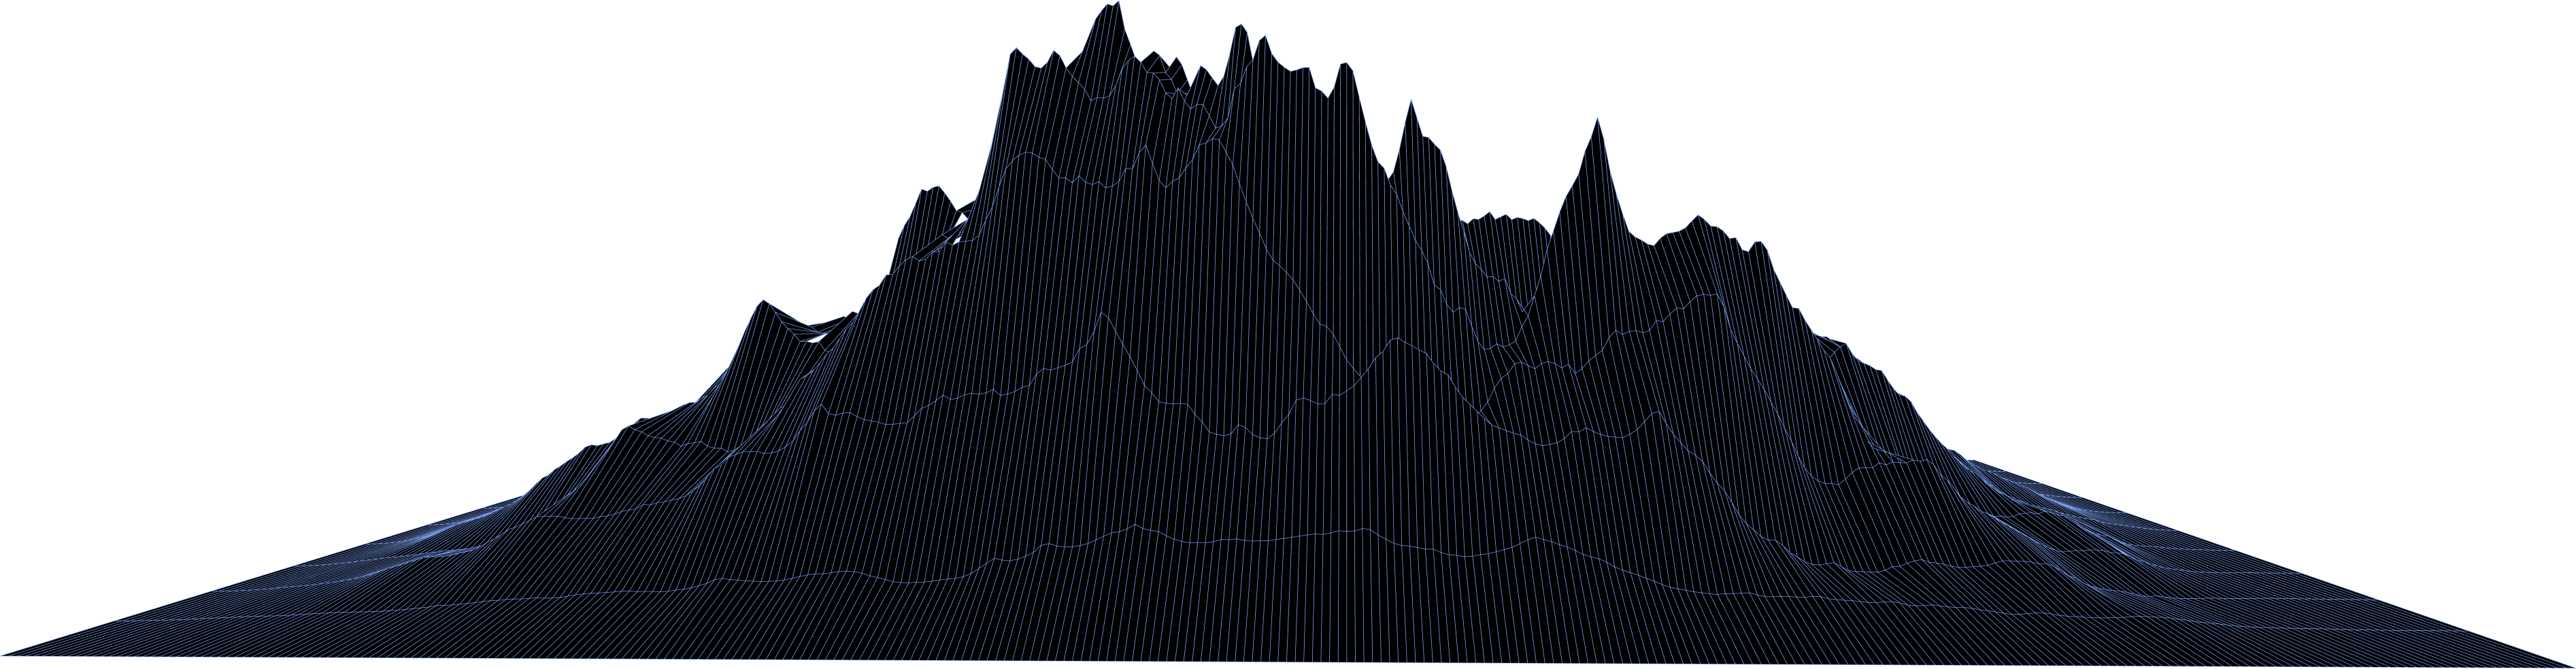 A Data Mountain